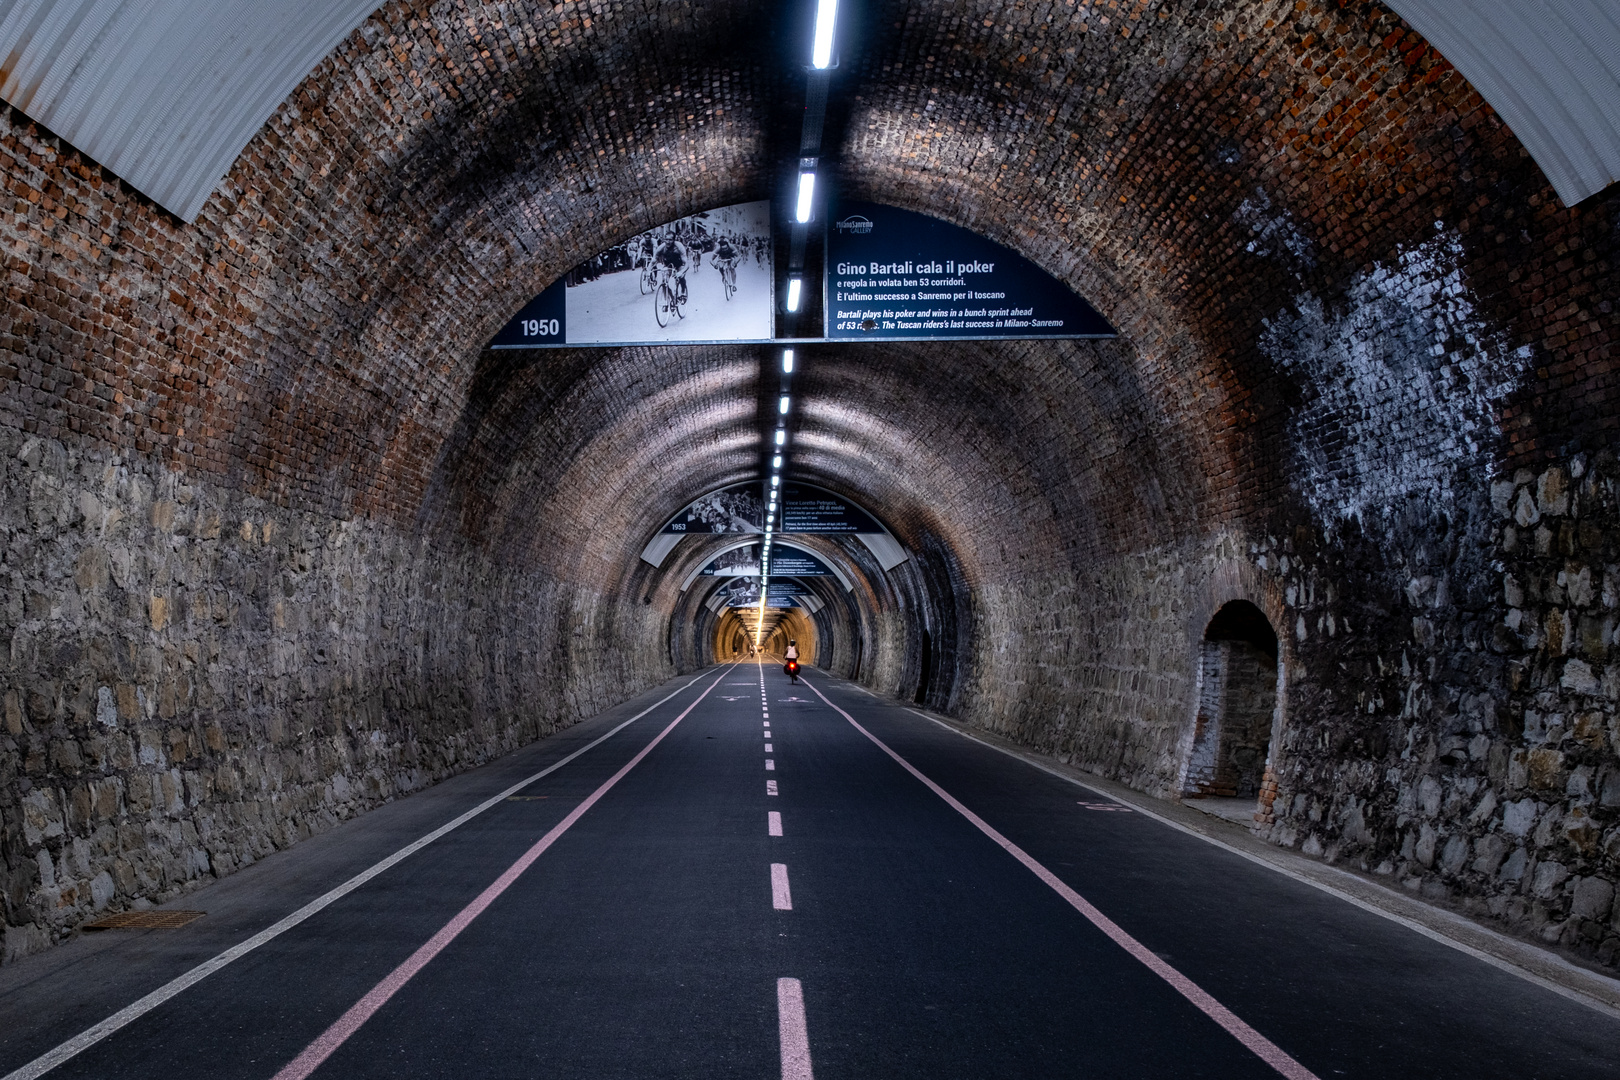 Im Tunnel